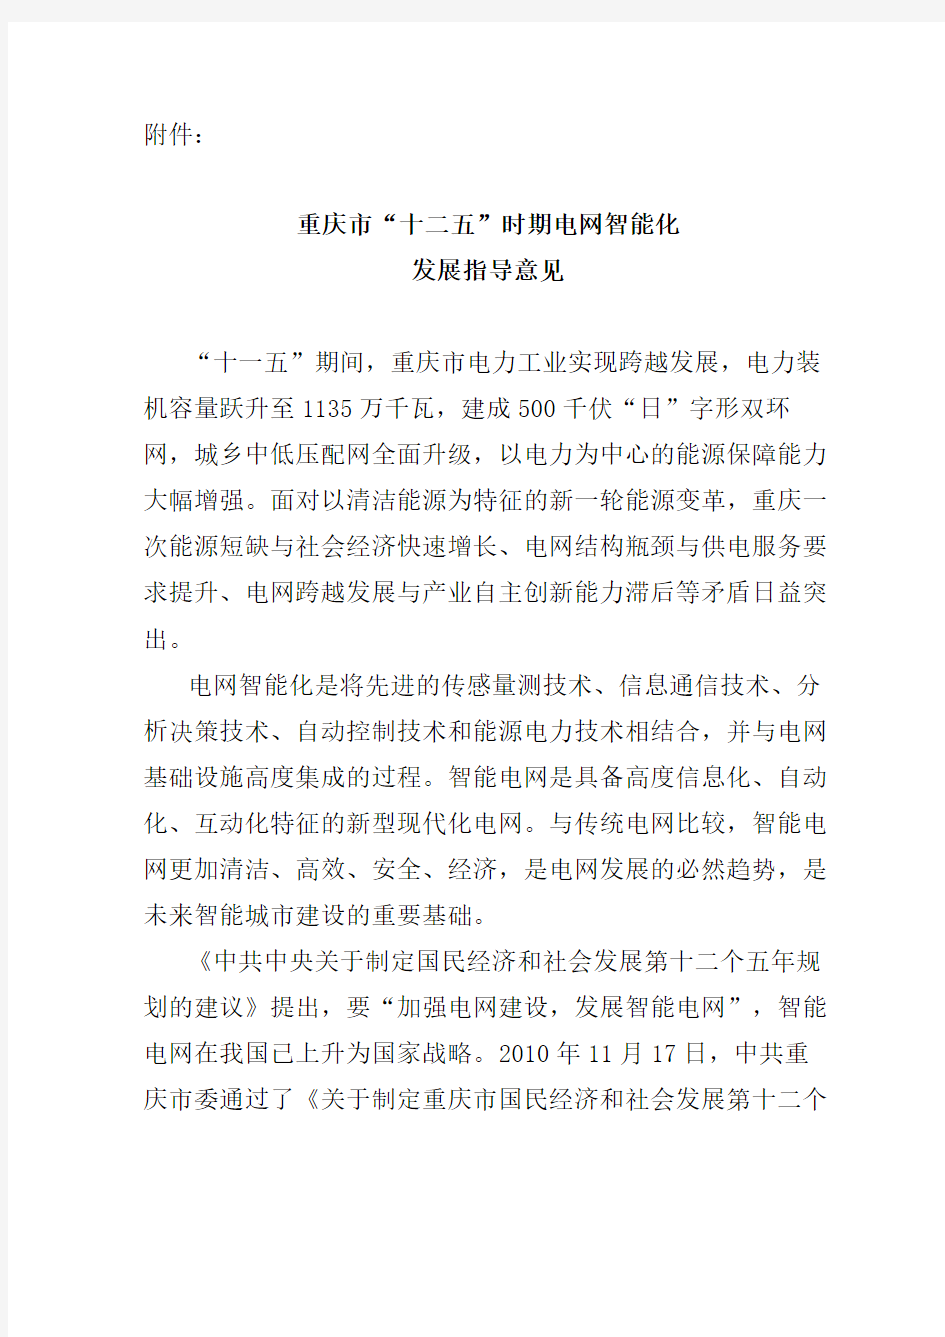 重庆市十二五电网智能化发展指导意见精编